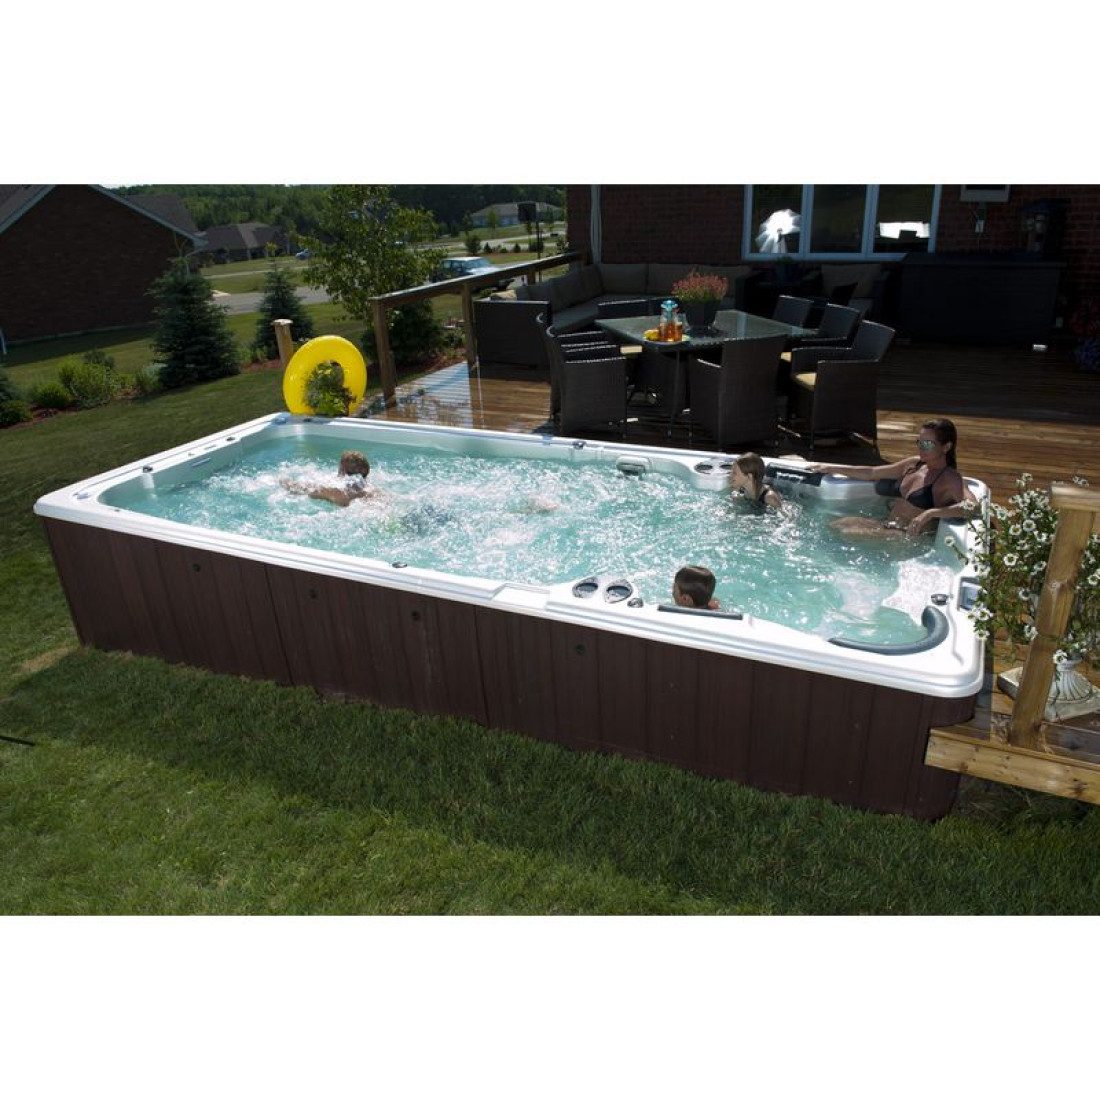 Wielofunkcyjny basen z przeciwprądem wody – Aquatrainer Swim Spa firmy MEADOW